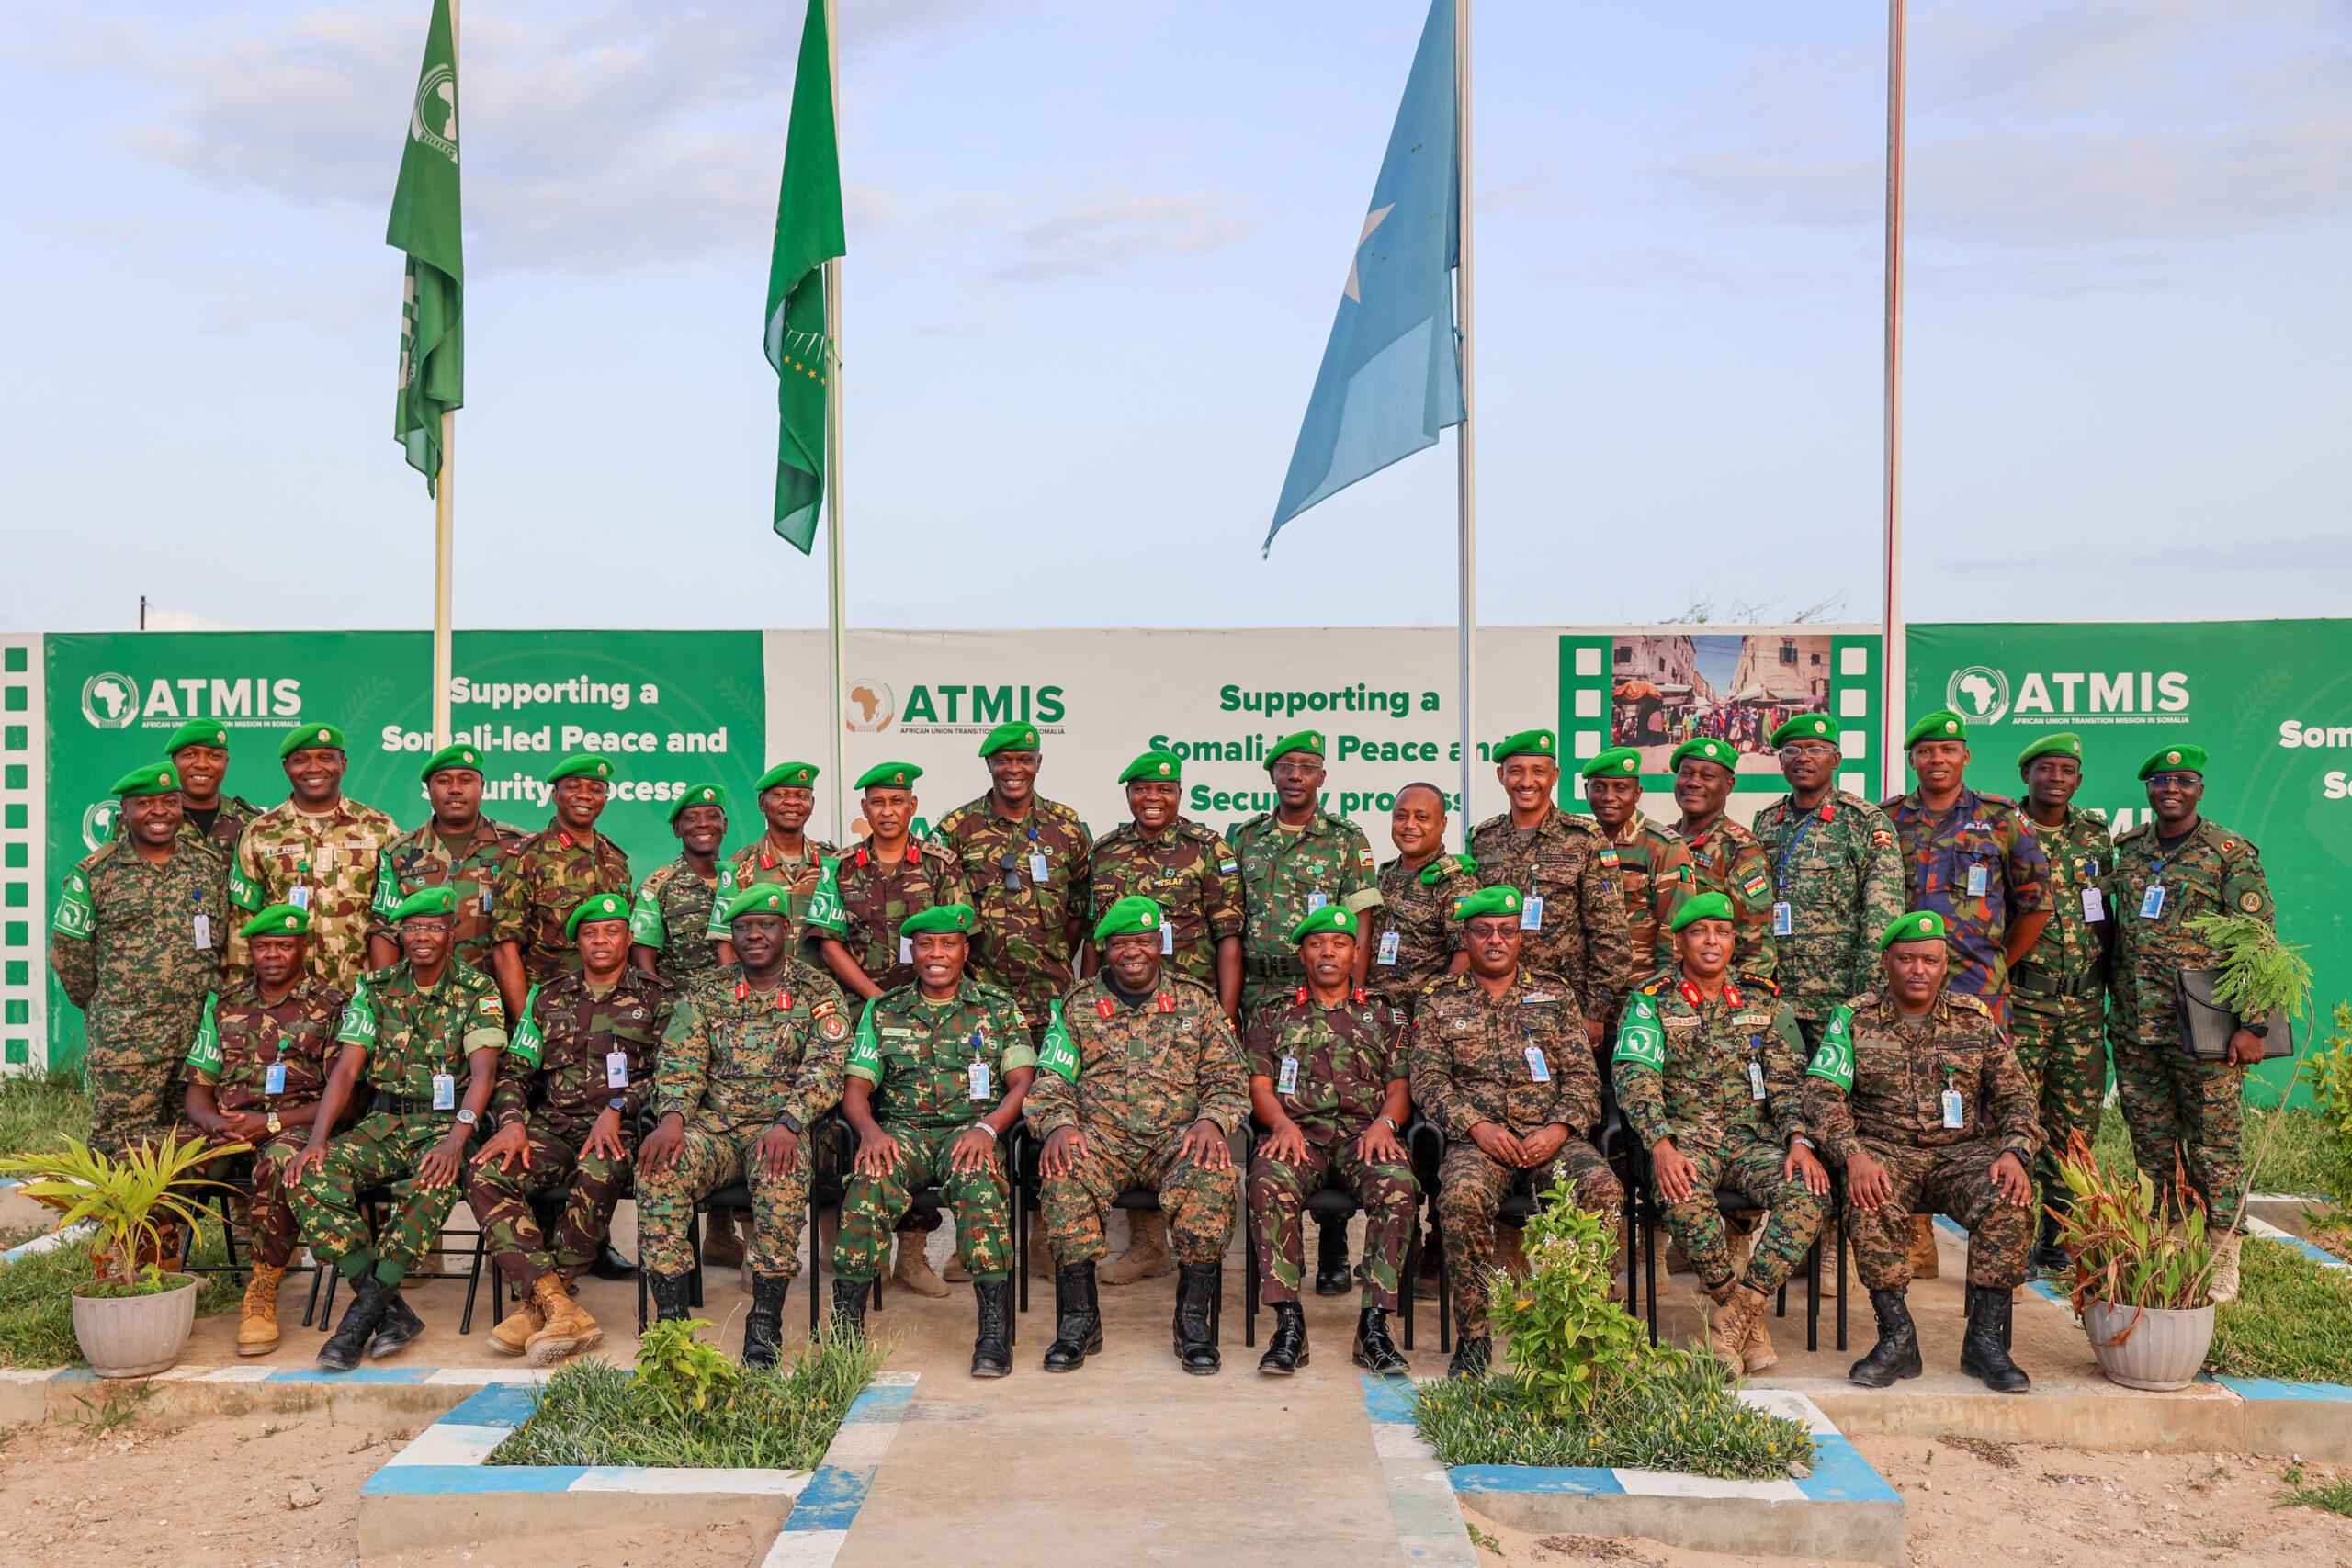 Fin de la Transition en Somalie: L’UE compte appuyer jusqu’à son terme le «Processus de Transition de l’Armée nationale somalienne»